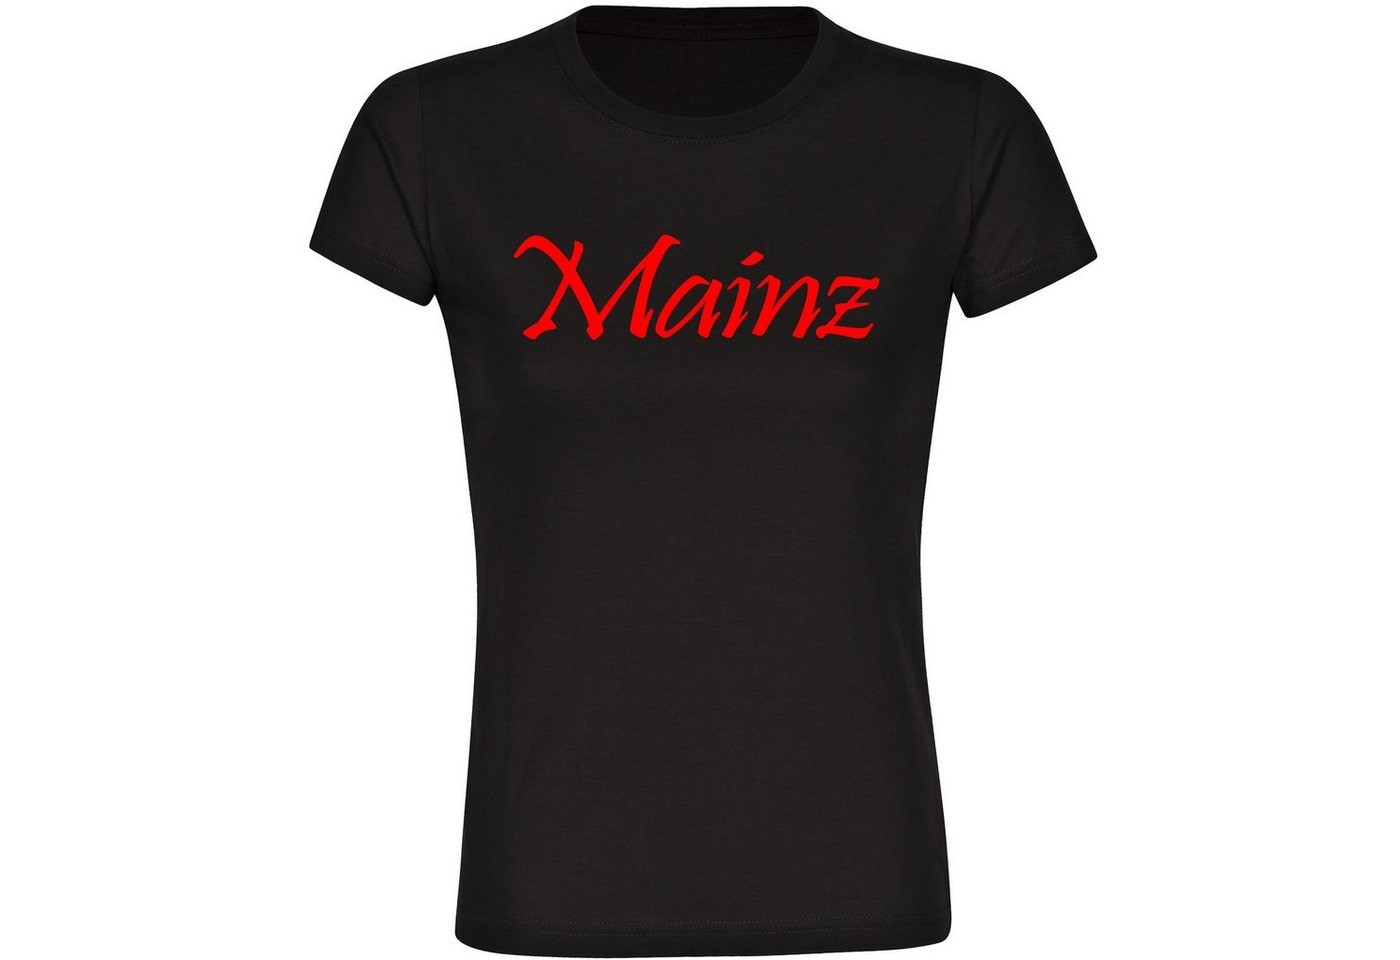 multifanshop T-Shirt Damen Mainz - Schriftzug - Frauen von multifanshop